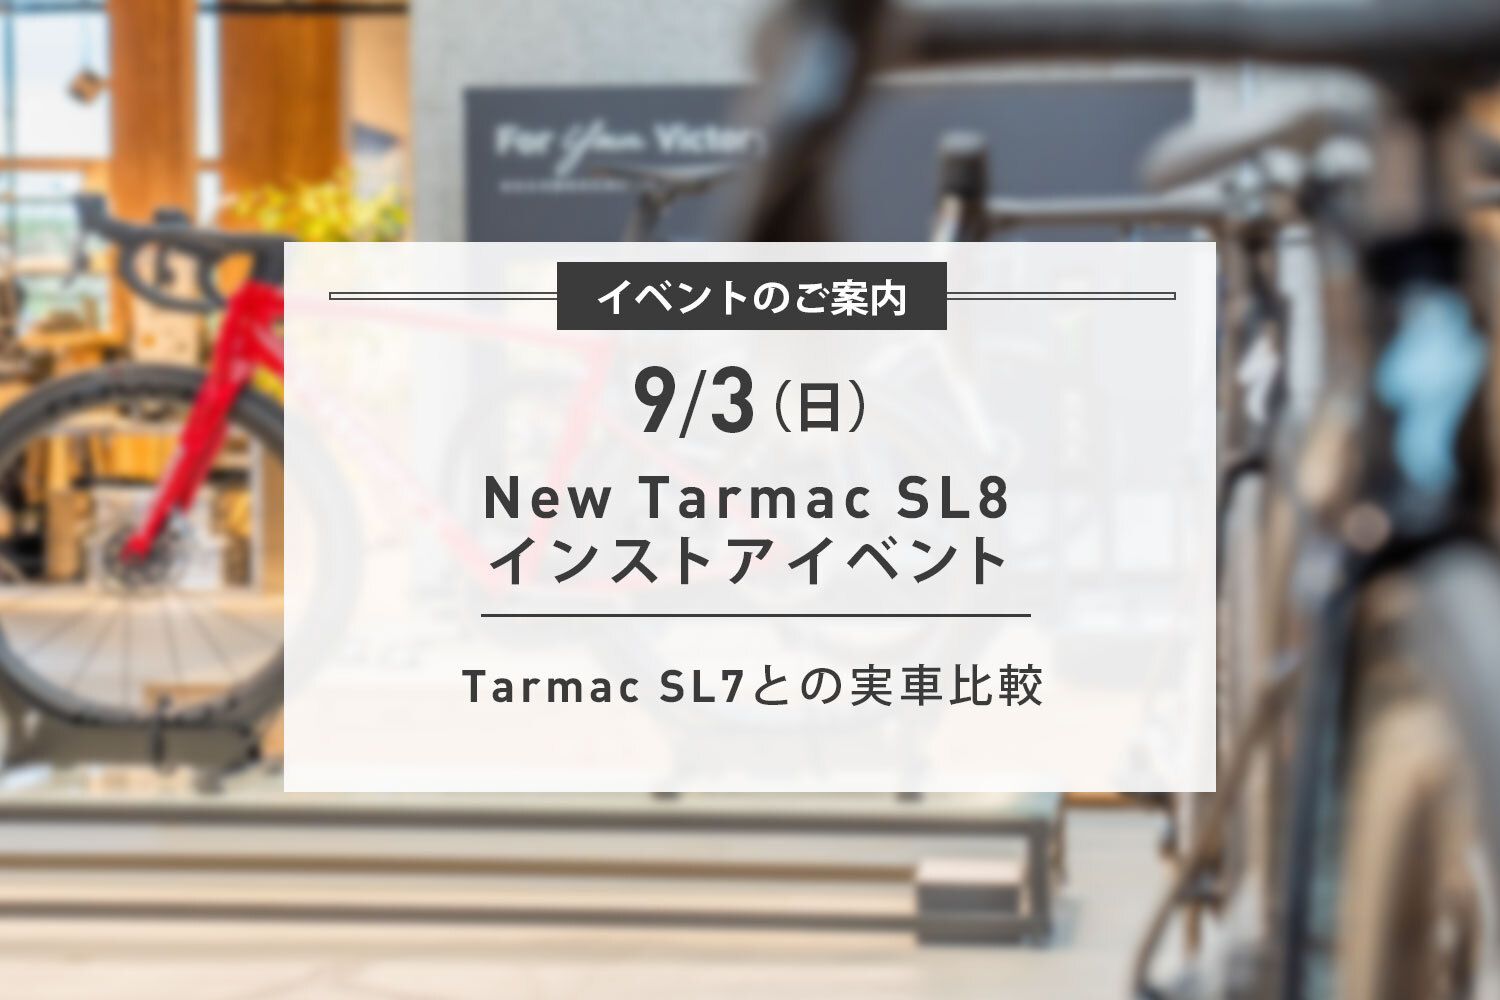 9/3(日) New Tarmac SL8 インストアイベント開催